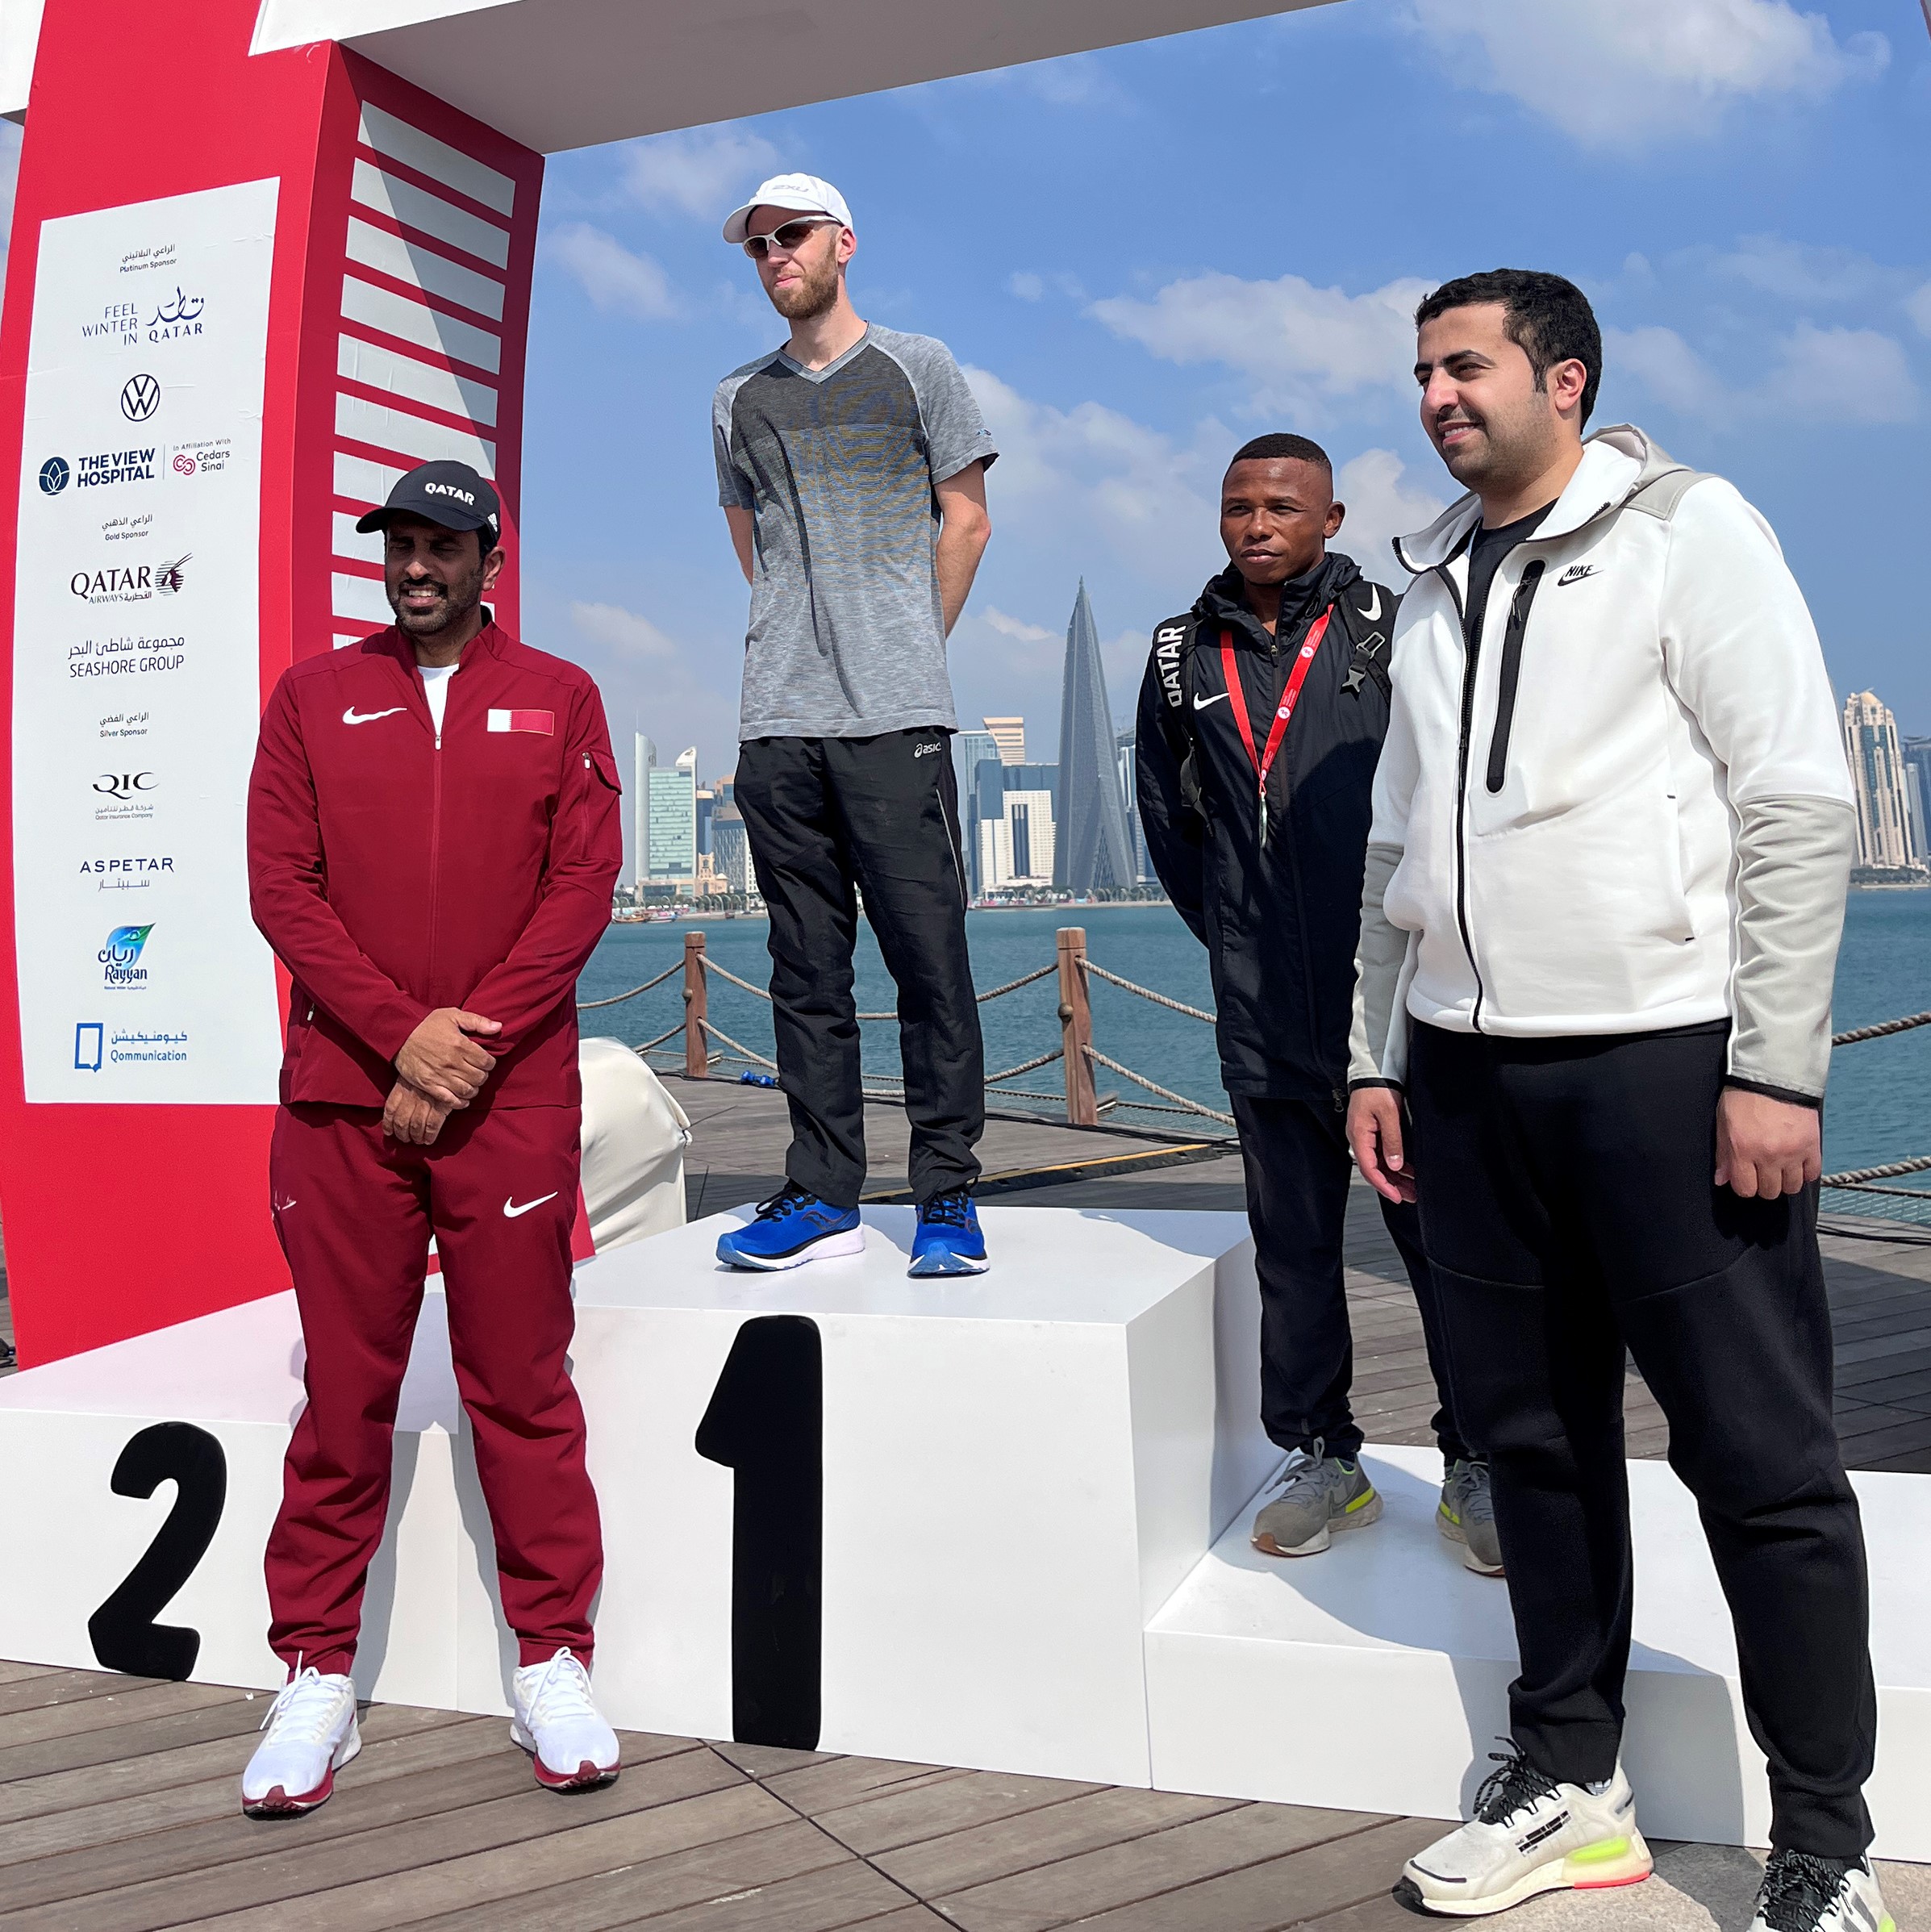 Image shows marathon competitors on podium in Qatar.